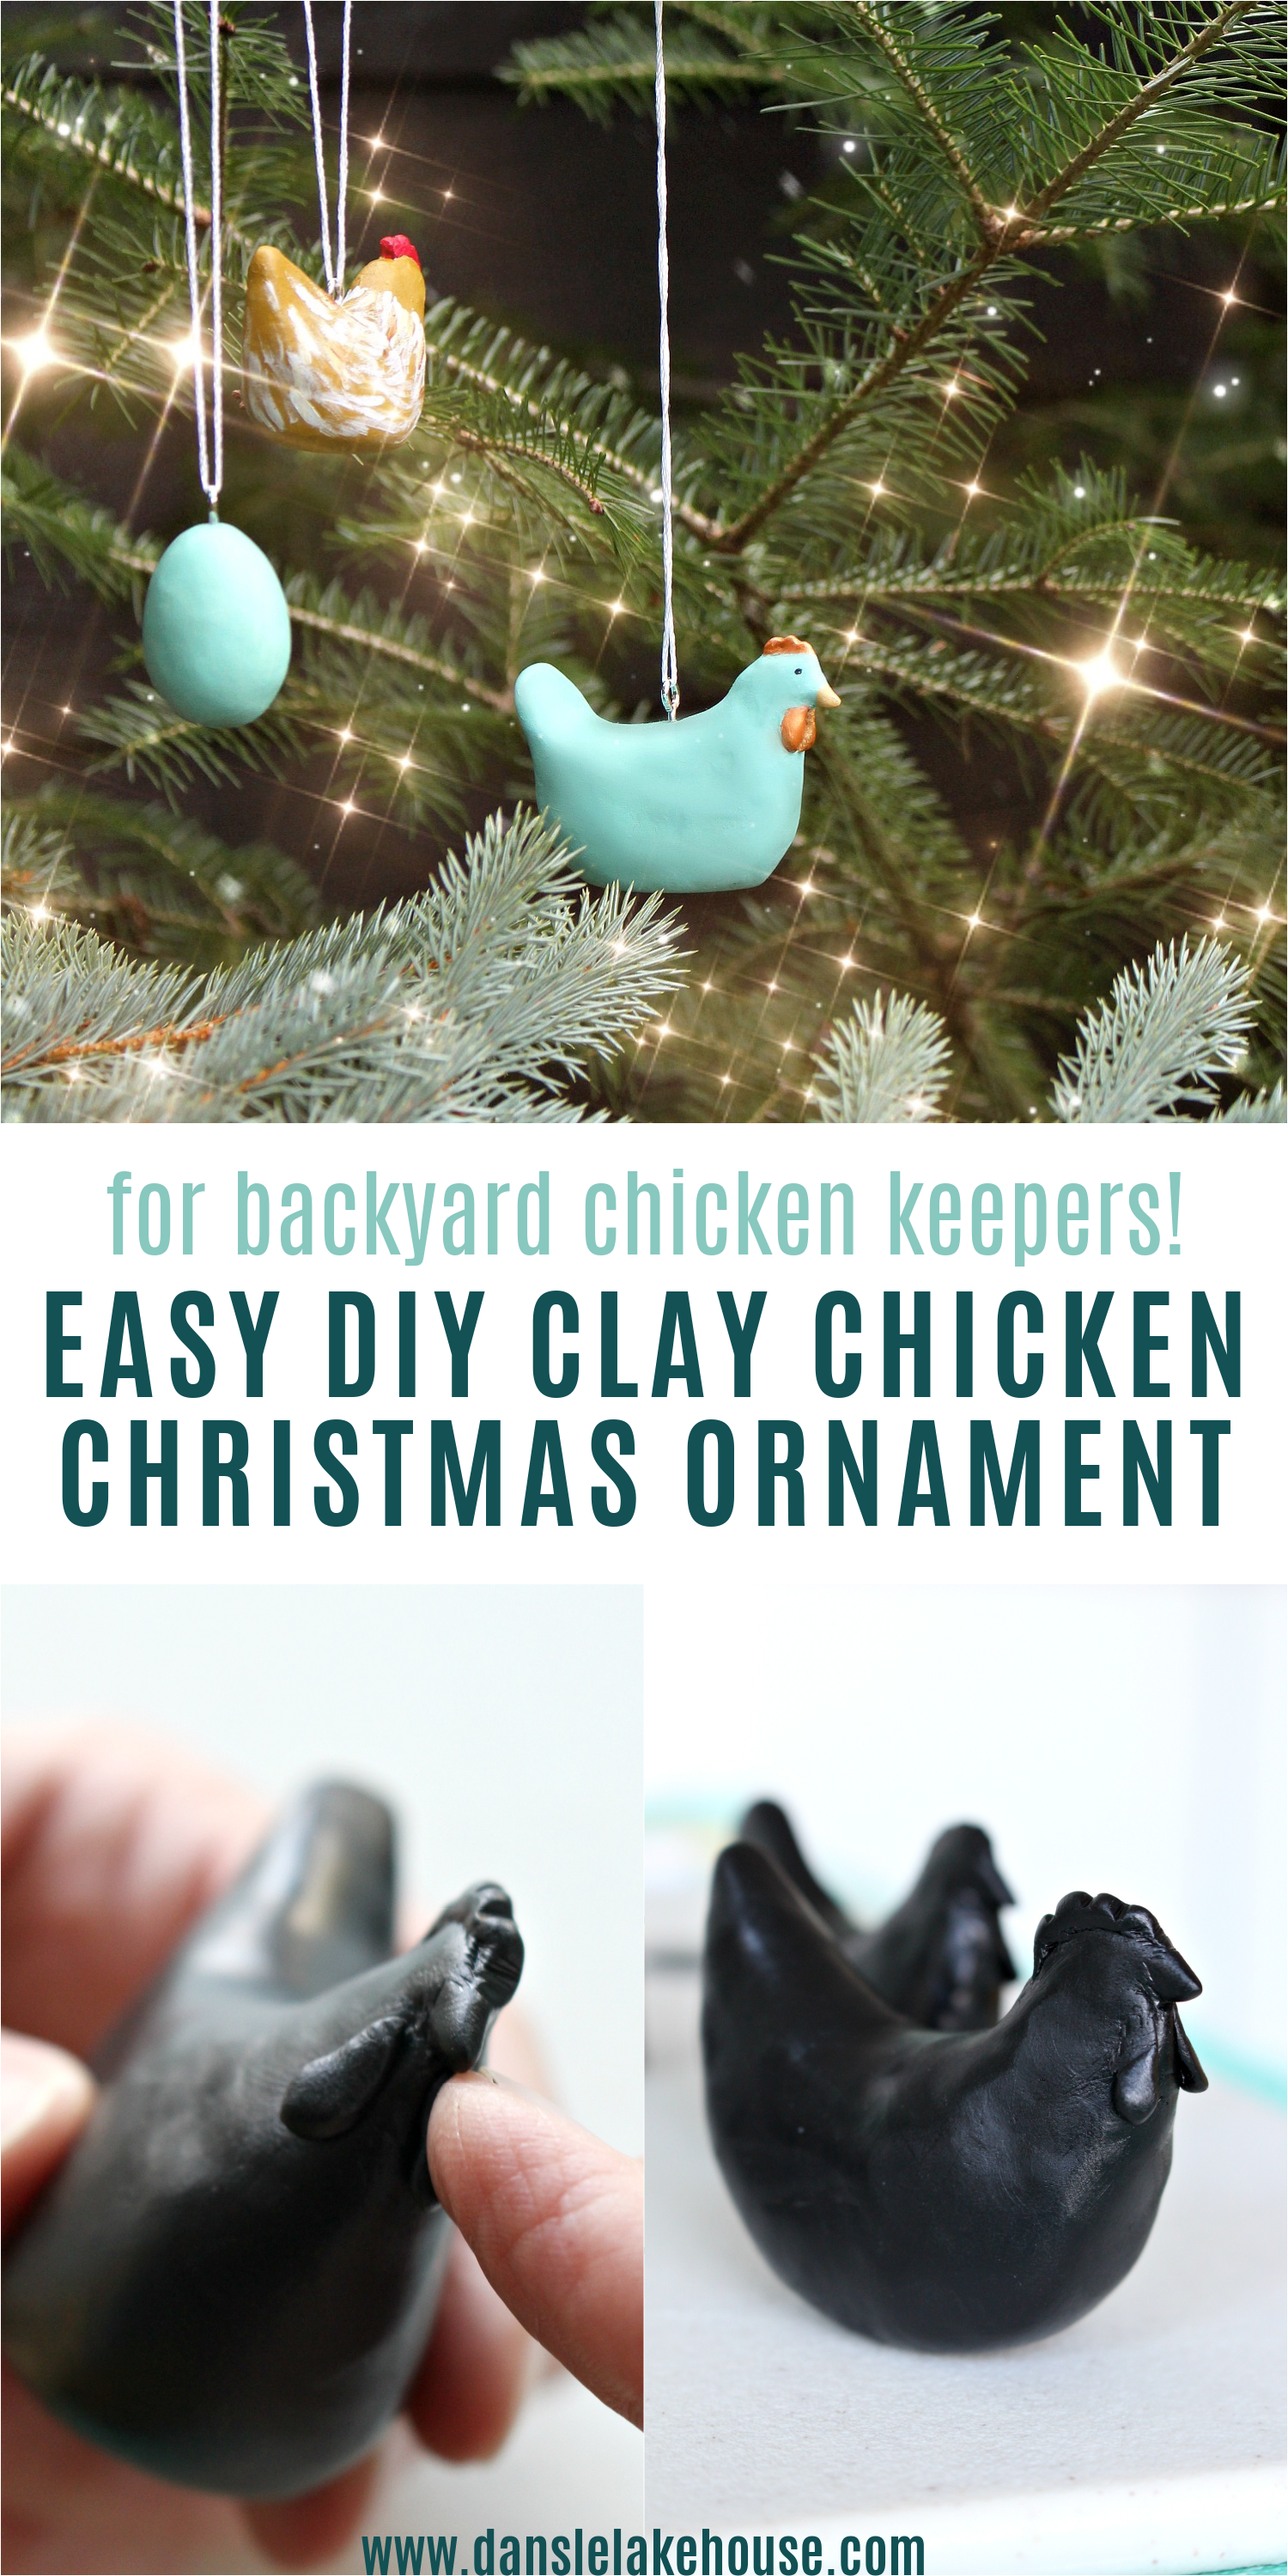 DIY Clay Chicken Ornament